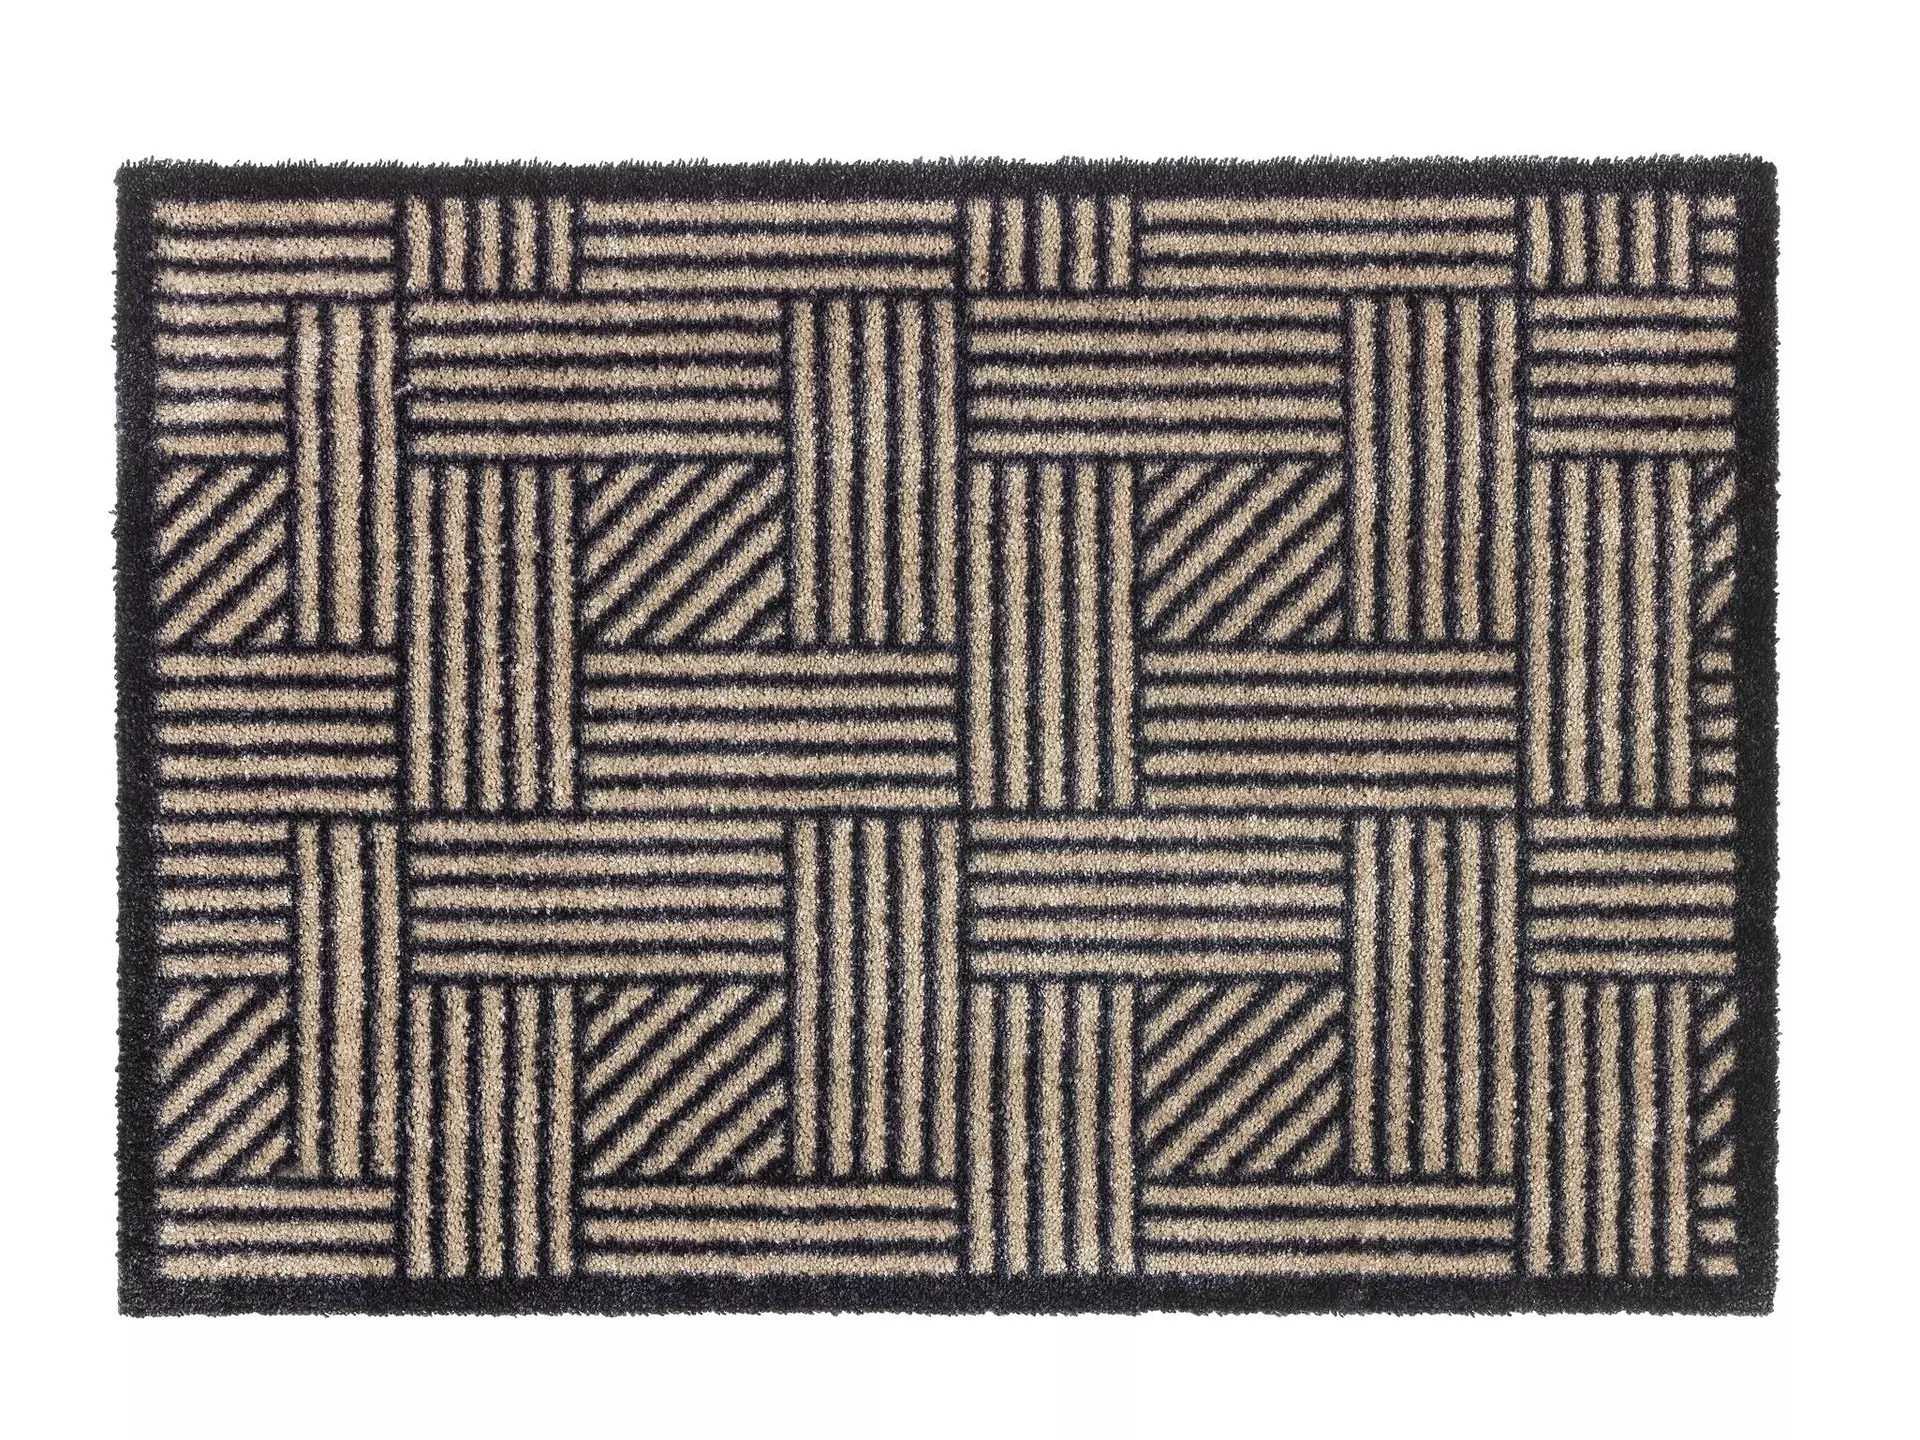 Türmatte Manhattan SCHÖNER WOHNEN-Kollektion Textil 50 x 70 cm